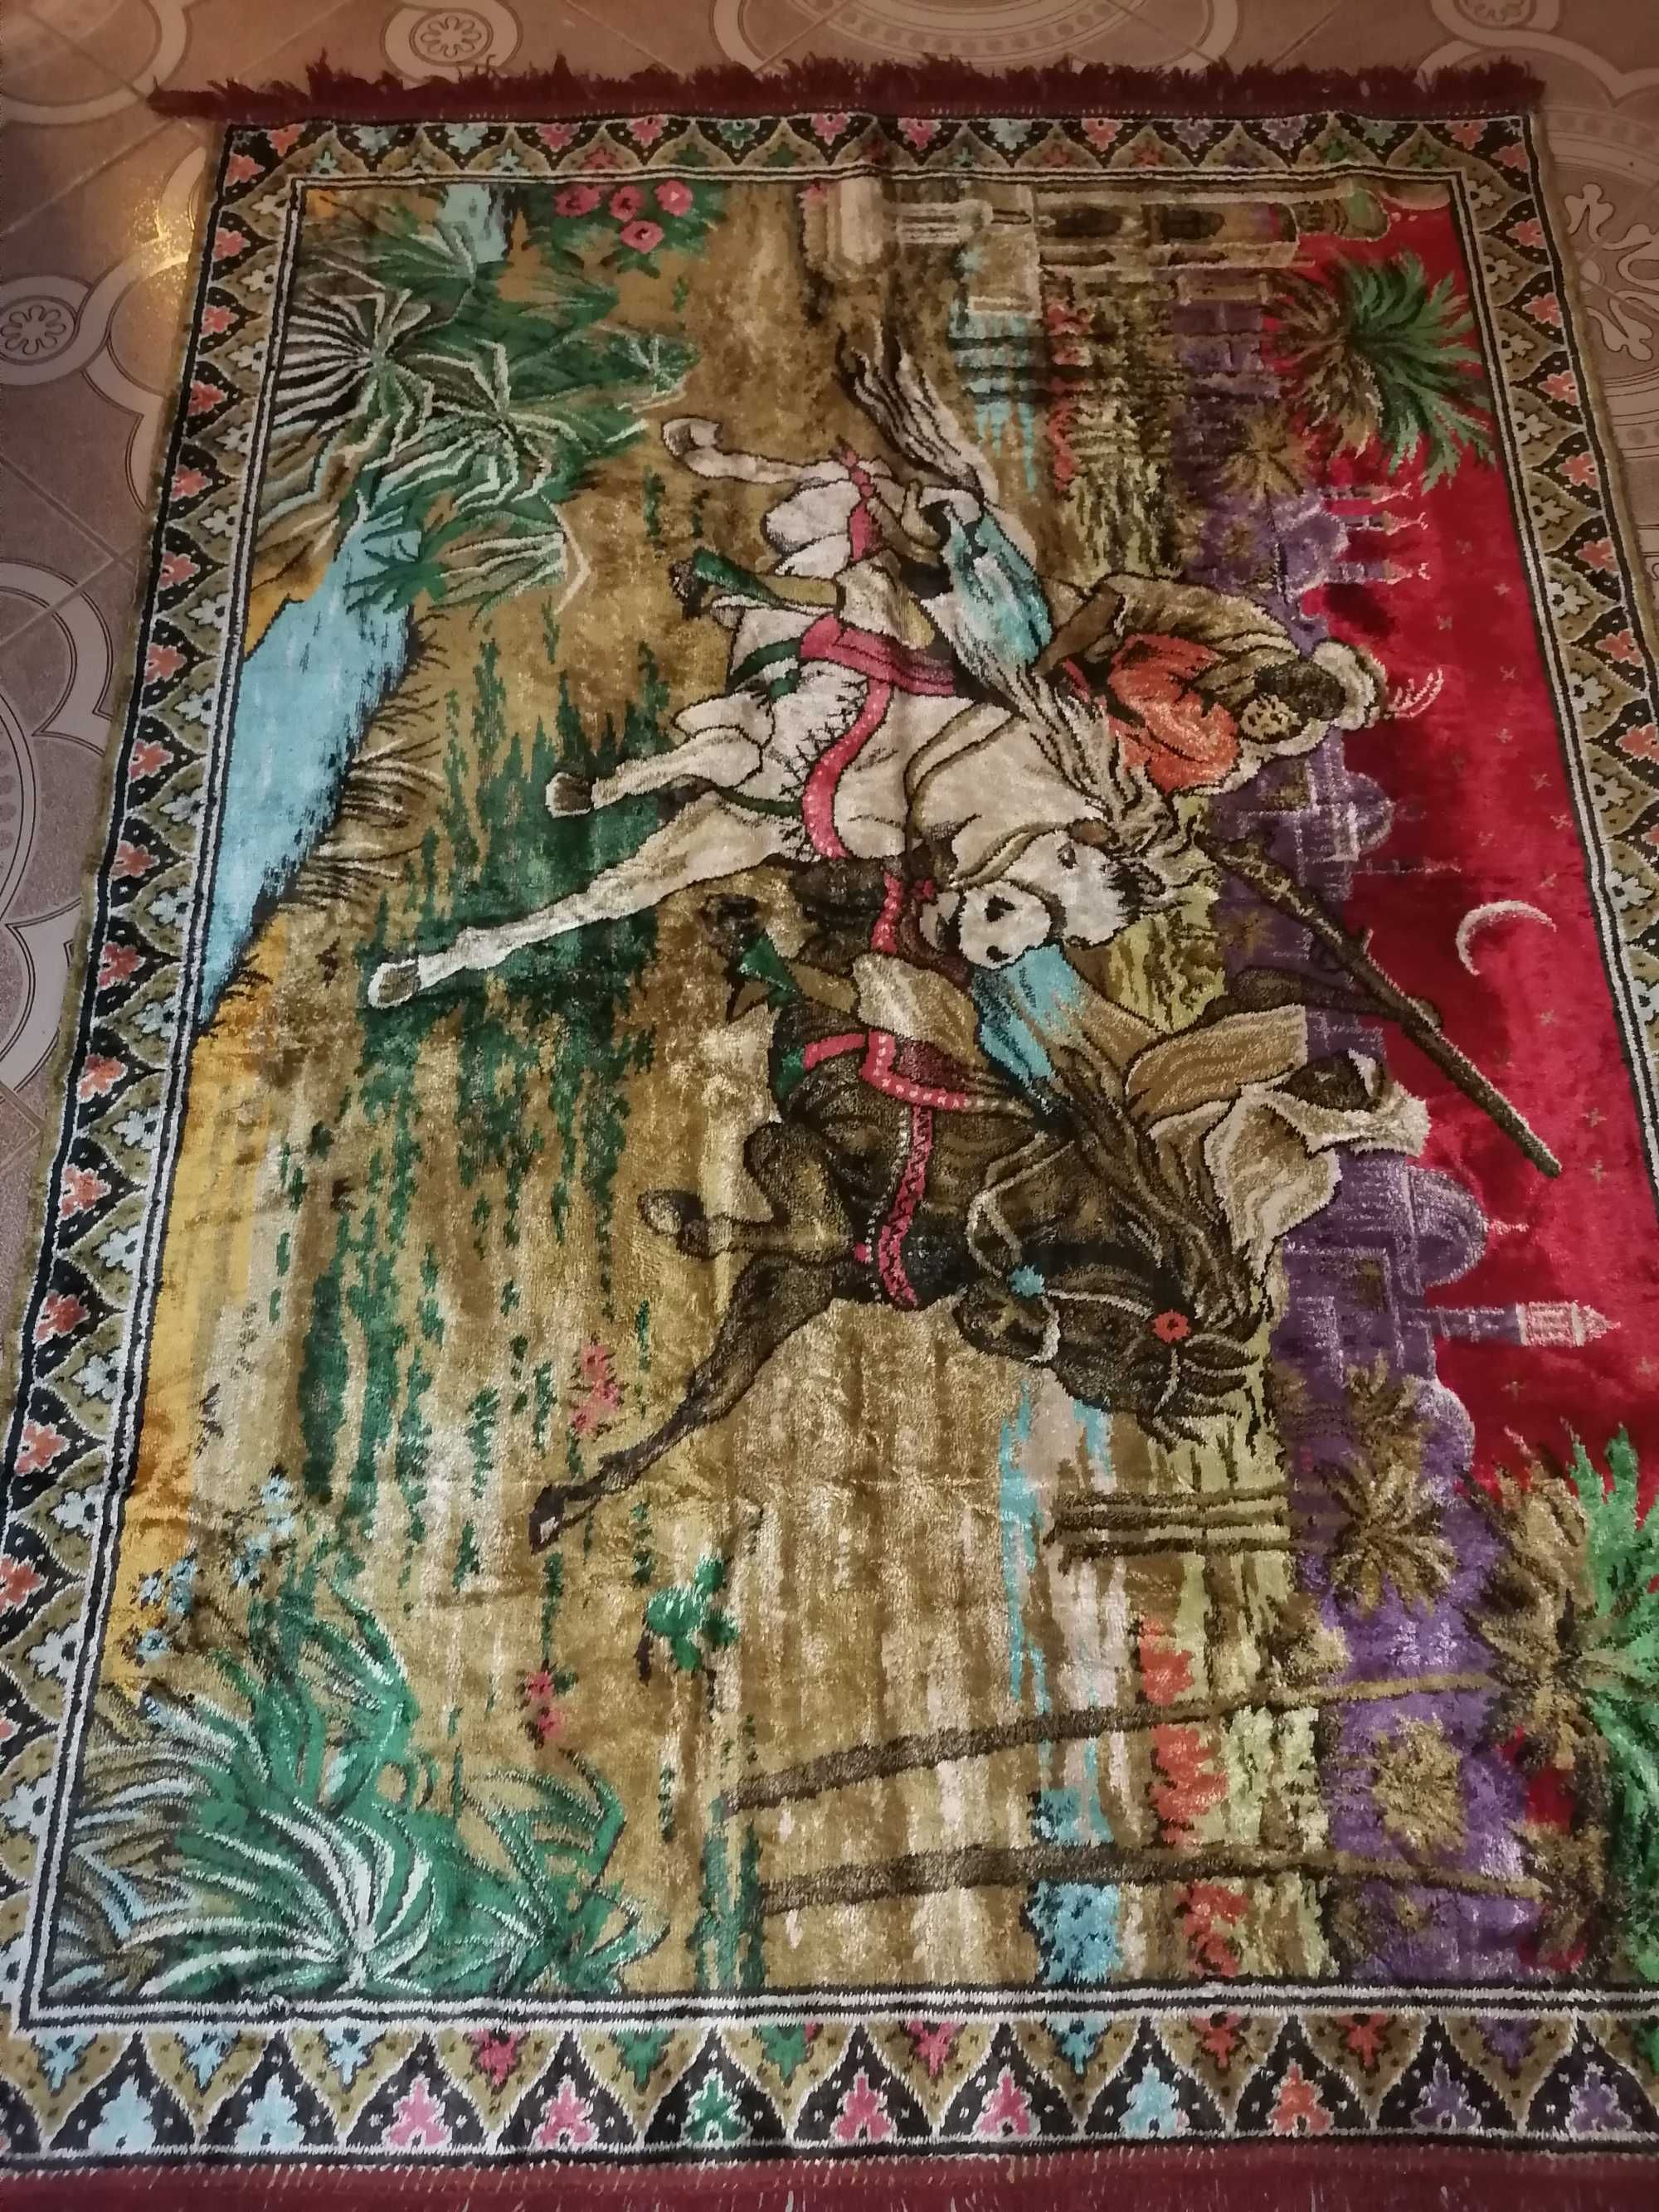 Vând carpeta cu răpirea din serai foarte veche